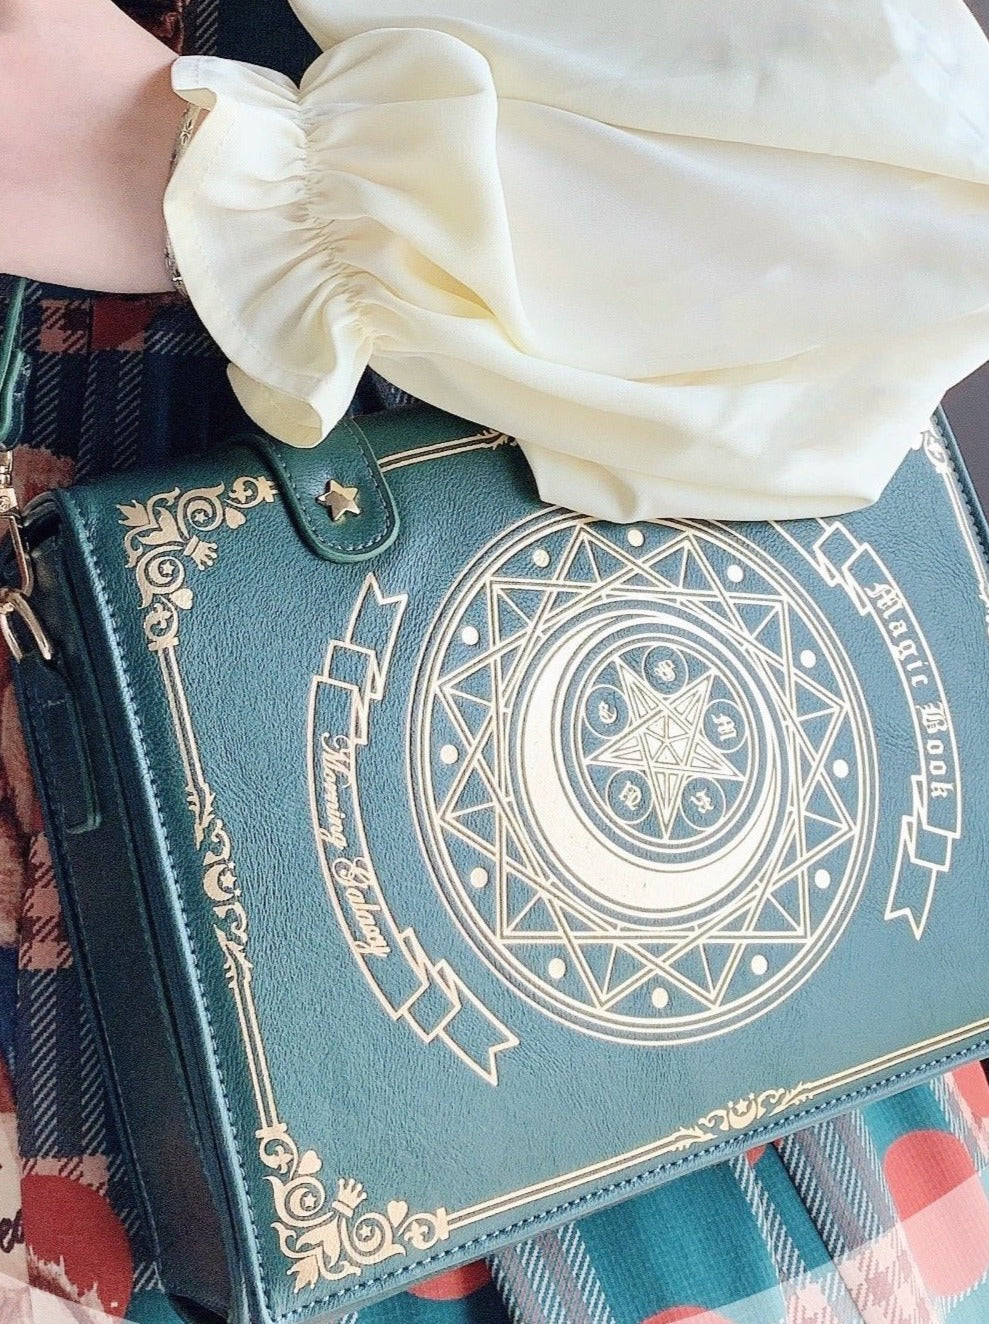 Magic book antique bag